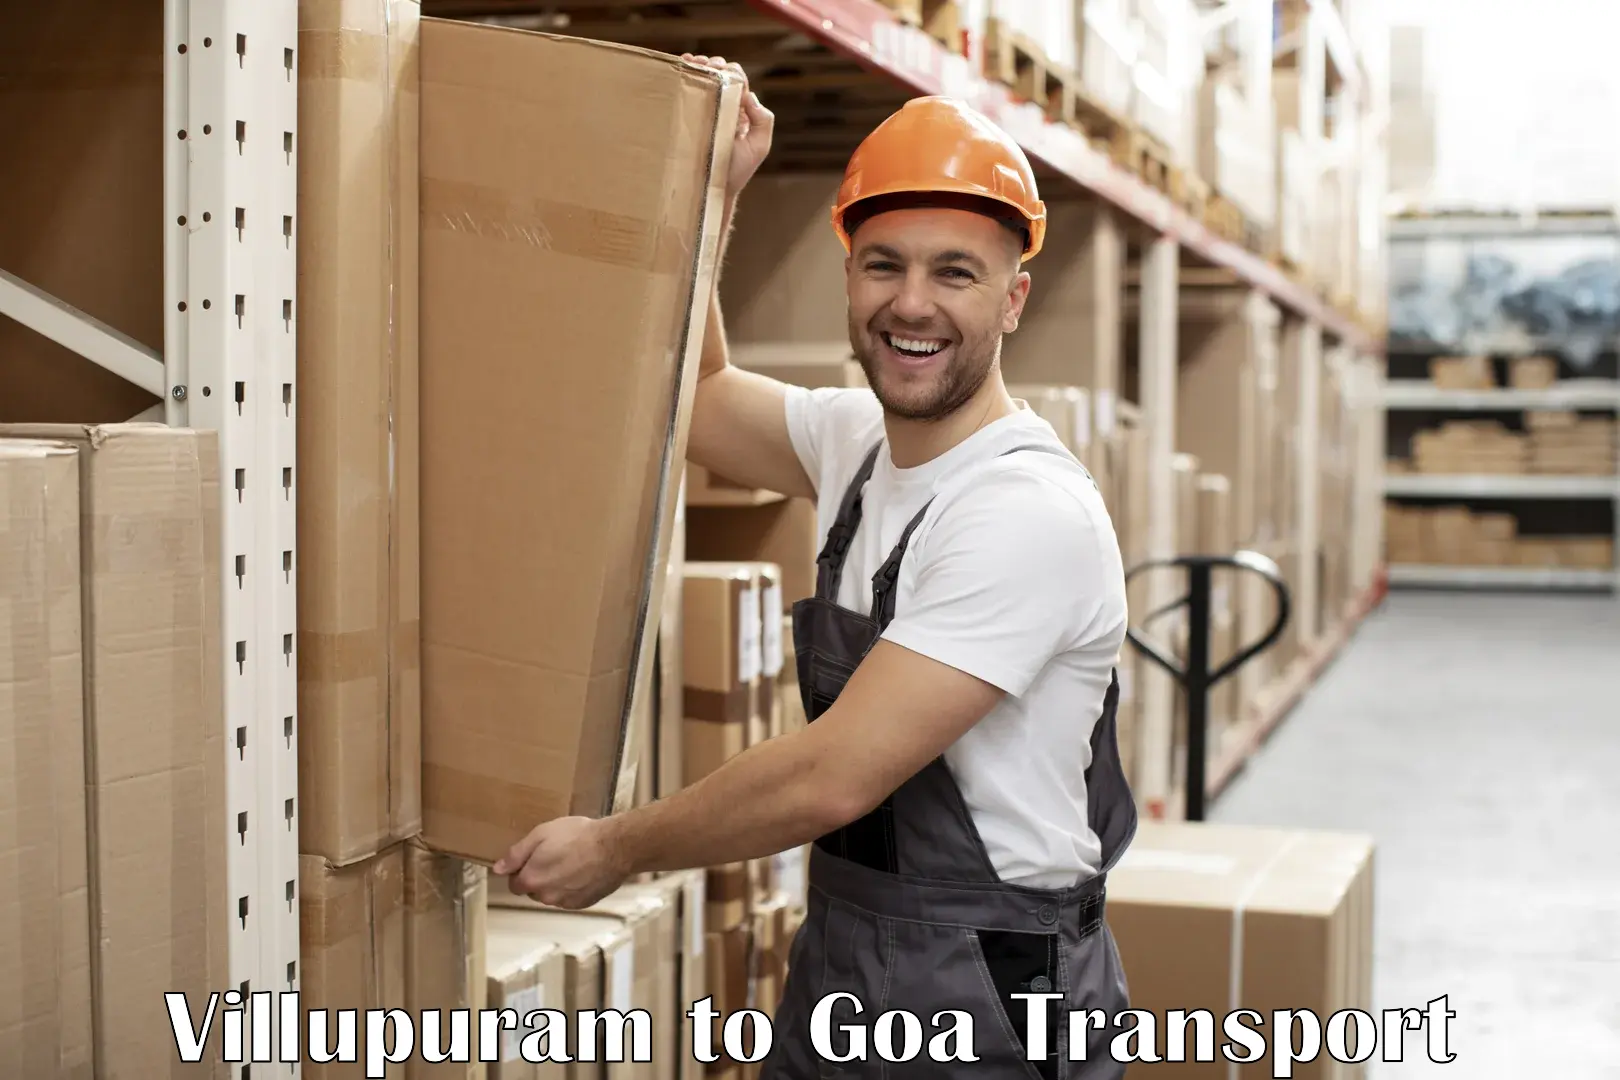 Transport in sharing Villupuram to IIT Goa